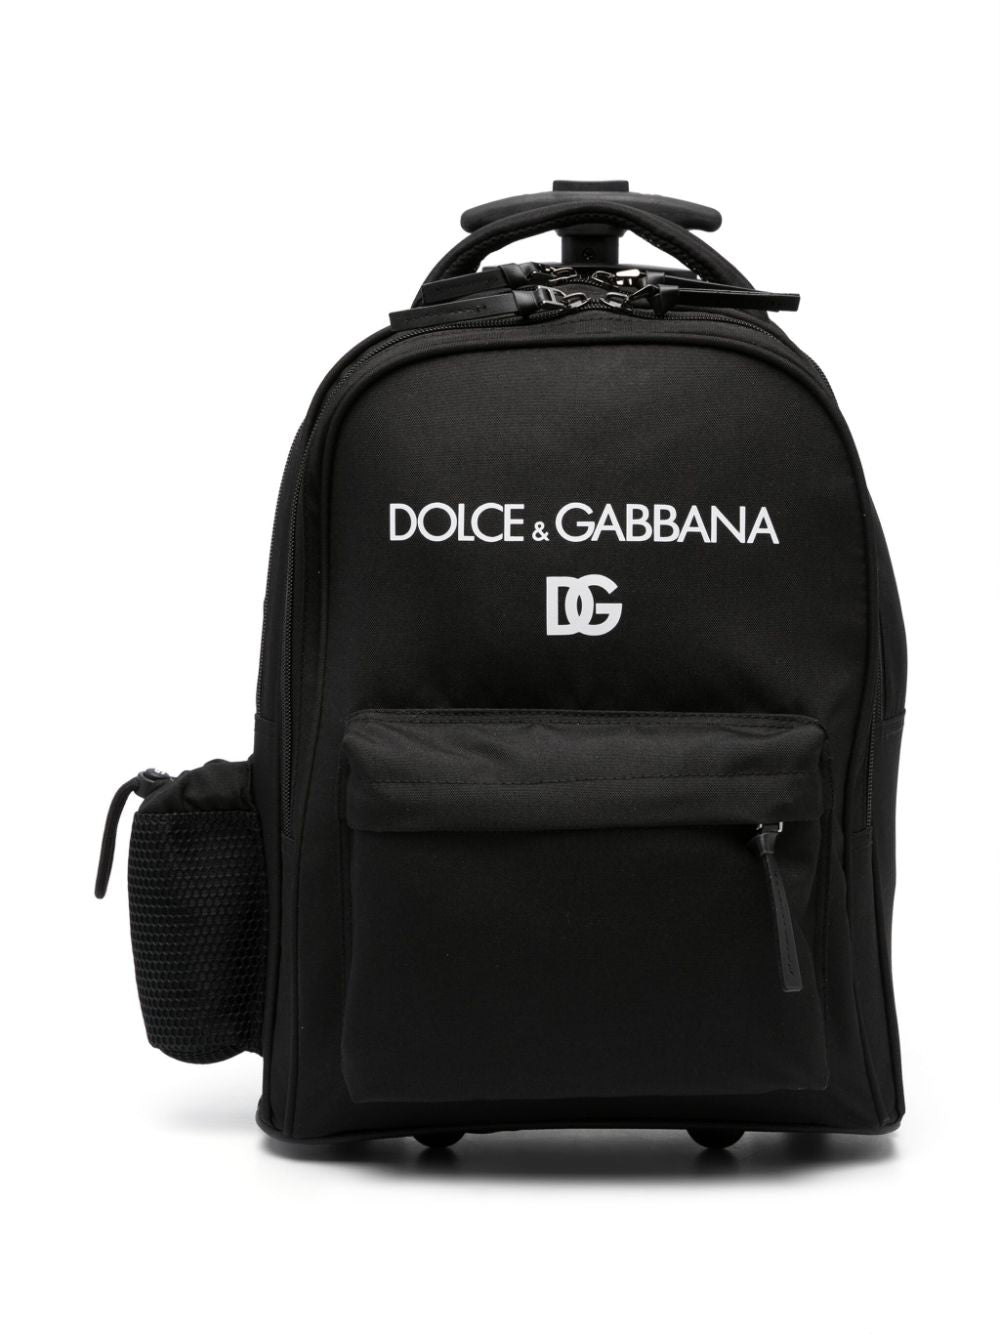 Black unisex backpack with white logo